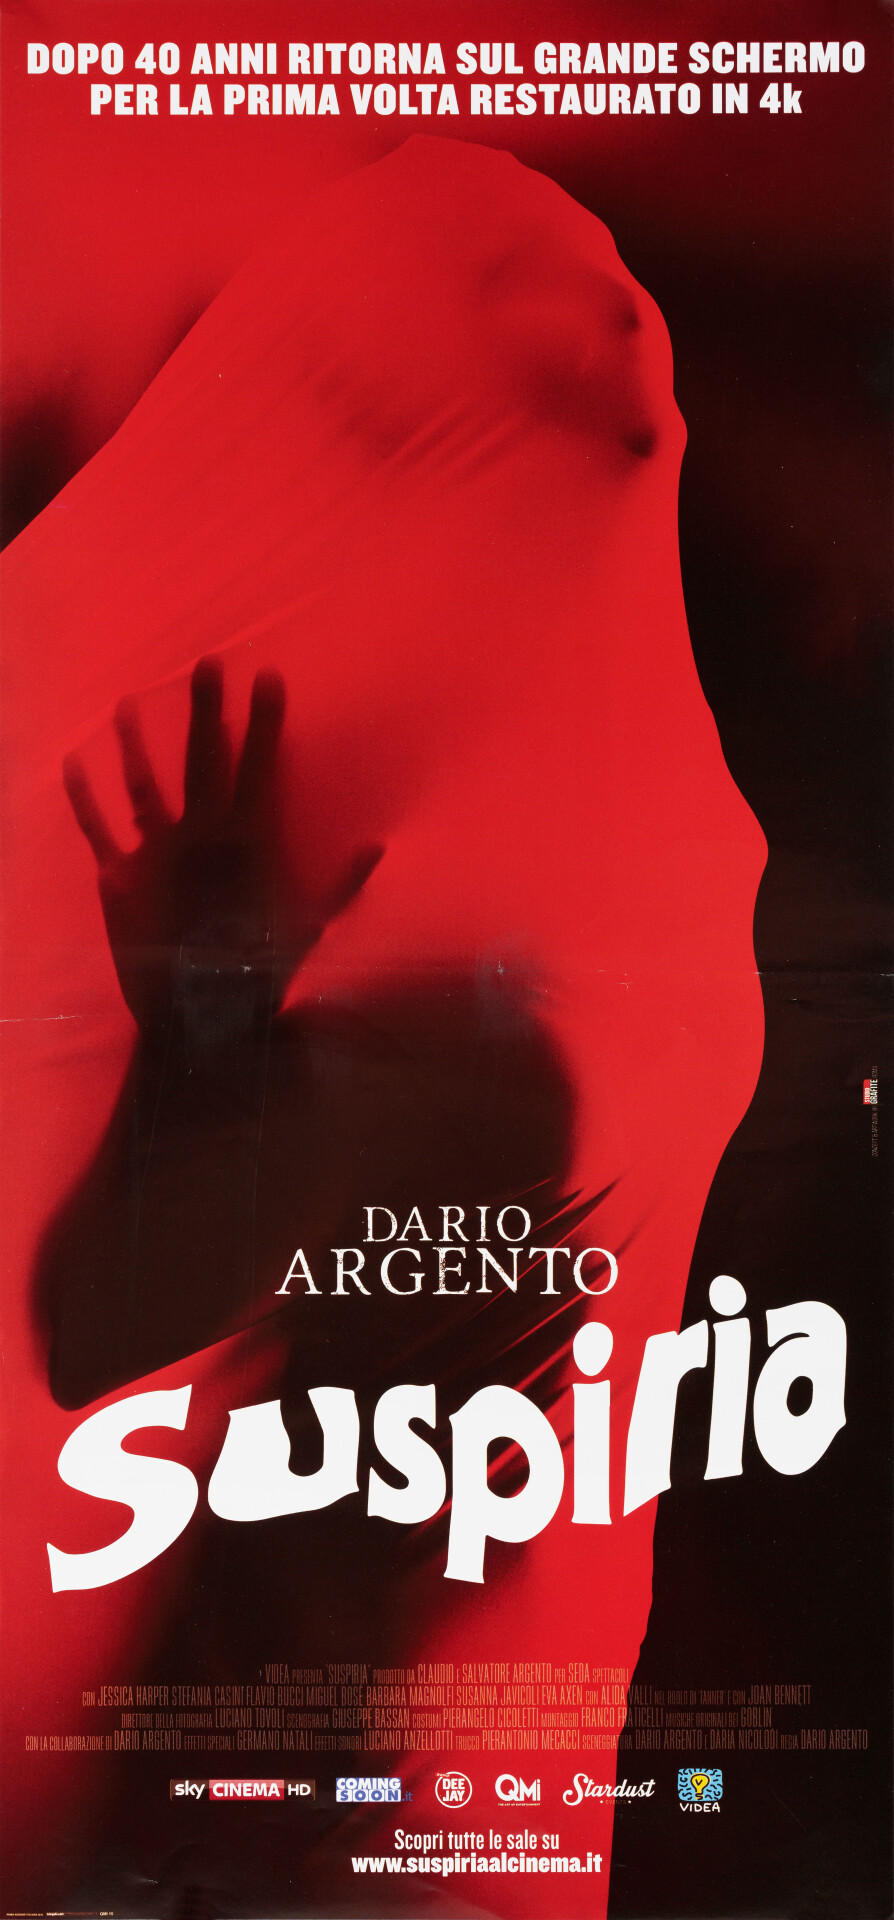 Суспирия (Suspiria, 1977), режиссёр Дарио Ардженто, итальянский постер к фильму (ужасы, 2017 год)